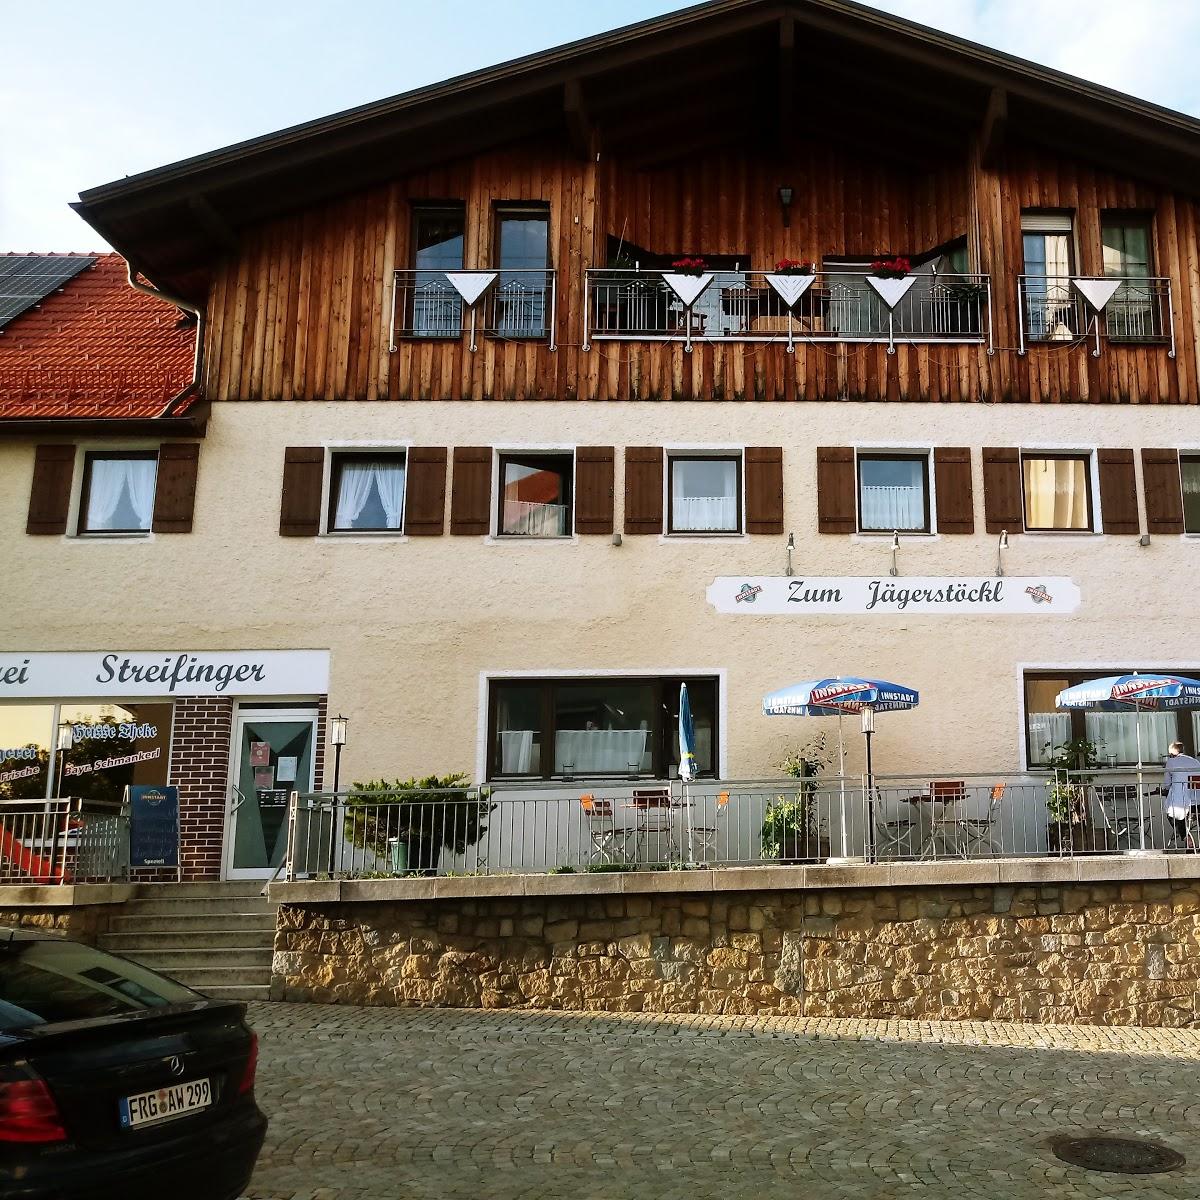 Restaurant "Zum Jägerstöckl" in Grafenau